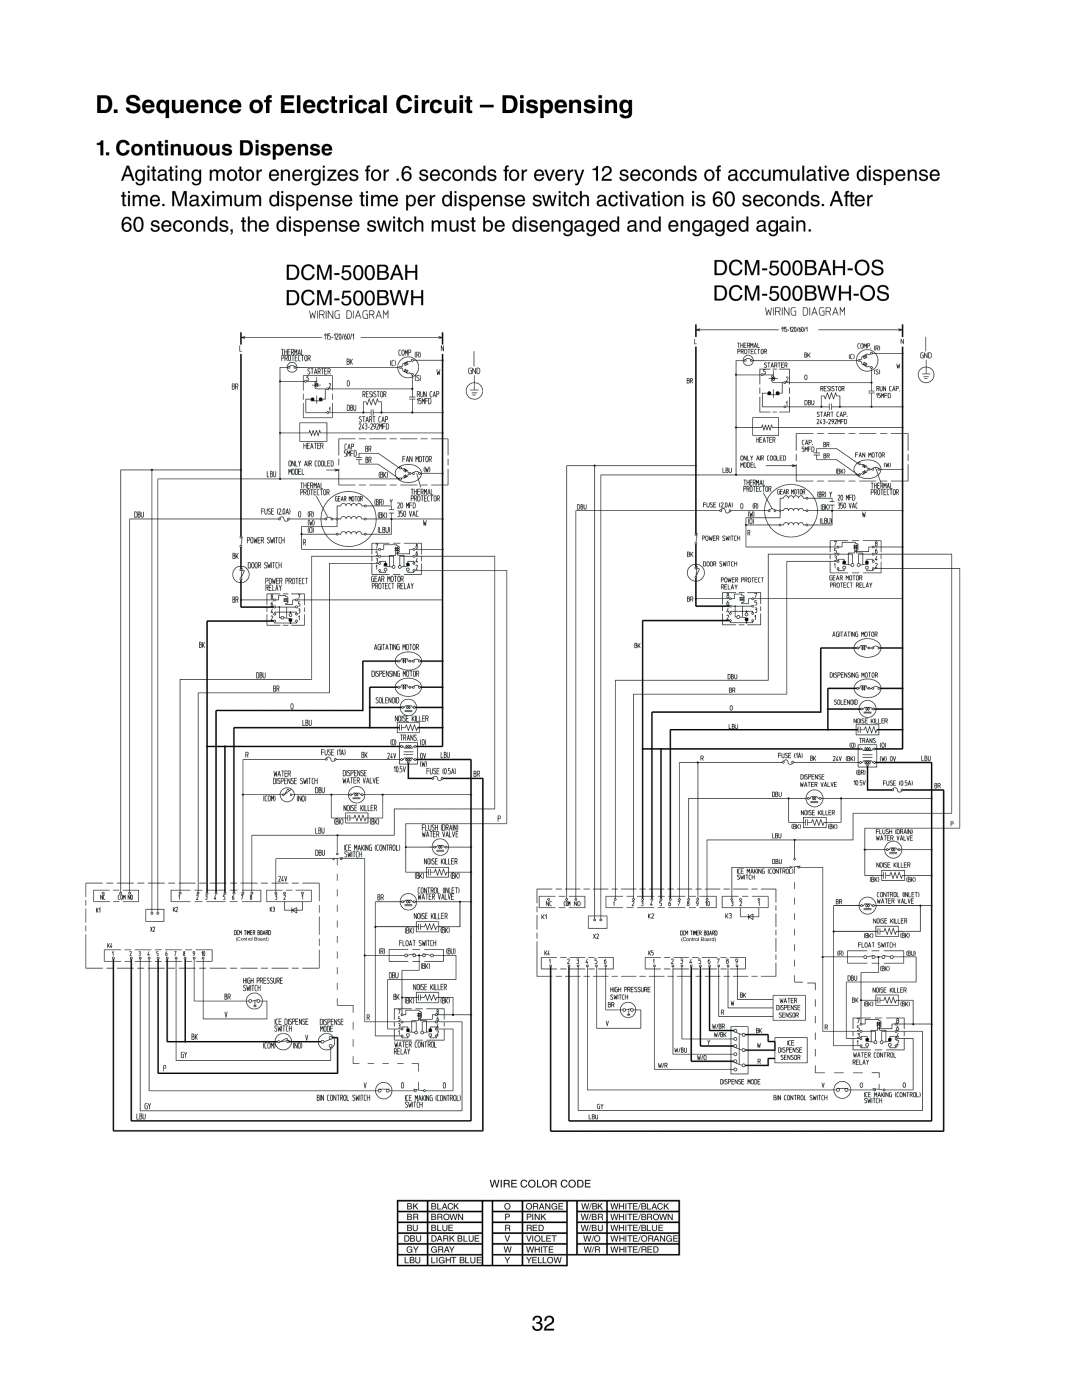 Hoshizaki DCM-500BAH-OS, DCM-500BWH-OS service manual D. Sequence of Electrical Circuit - Dispensing, Continuous Dispense 